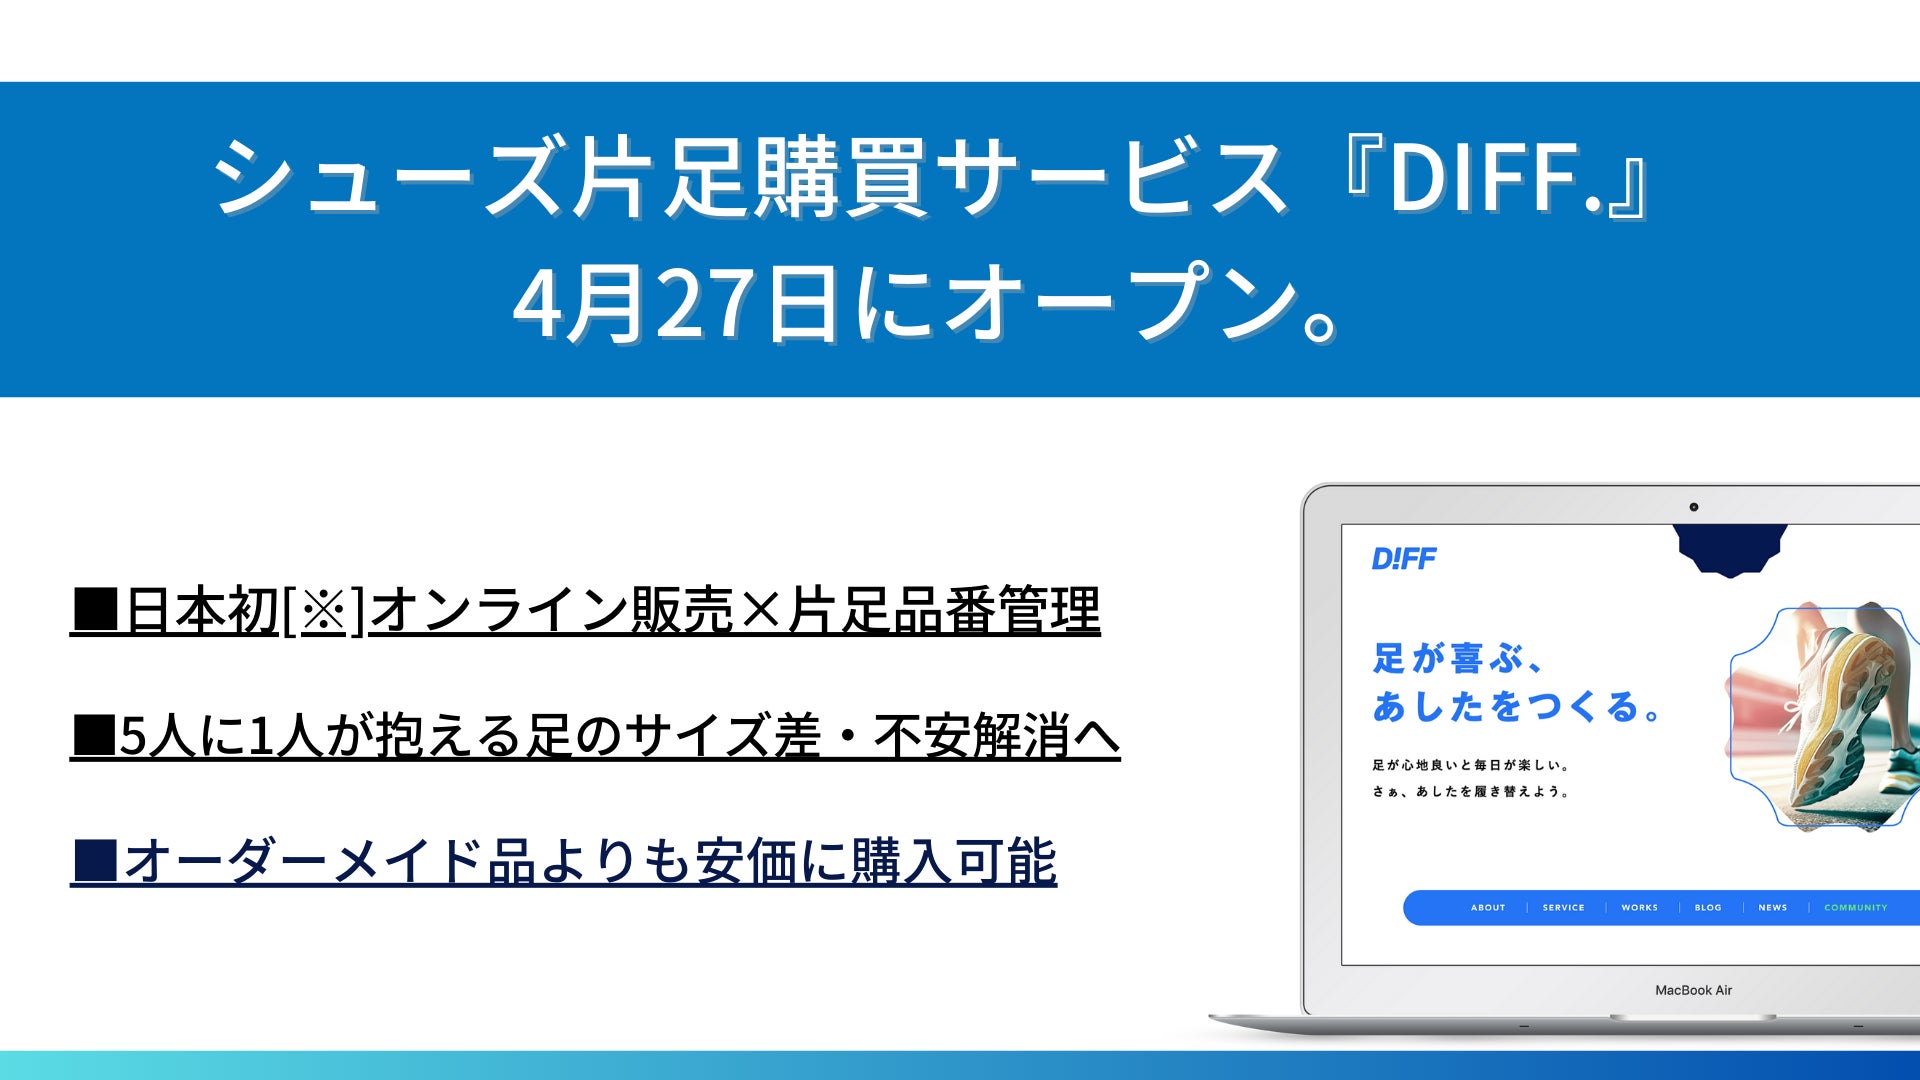 4月27日、シューズ片足購買サービス『DIFF.』が販売サイトを公開。日本初[※]の販売・管理システムで左右別サイズ購入が可能に